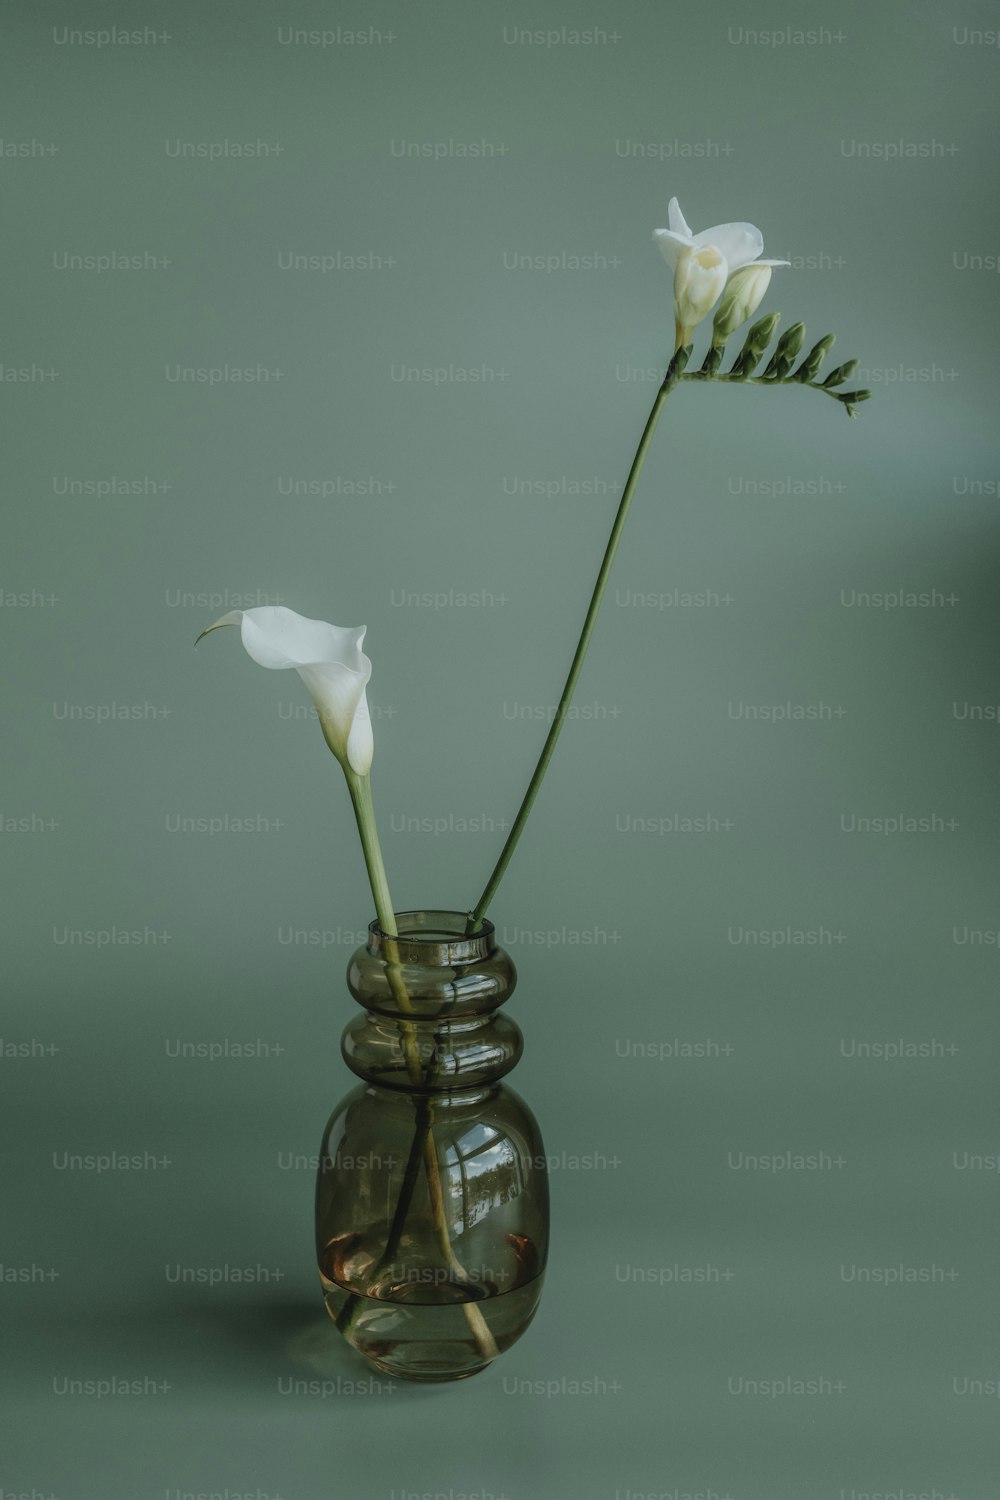 テーブルの上のガラスの花瓶に2つの白い花